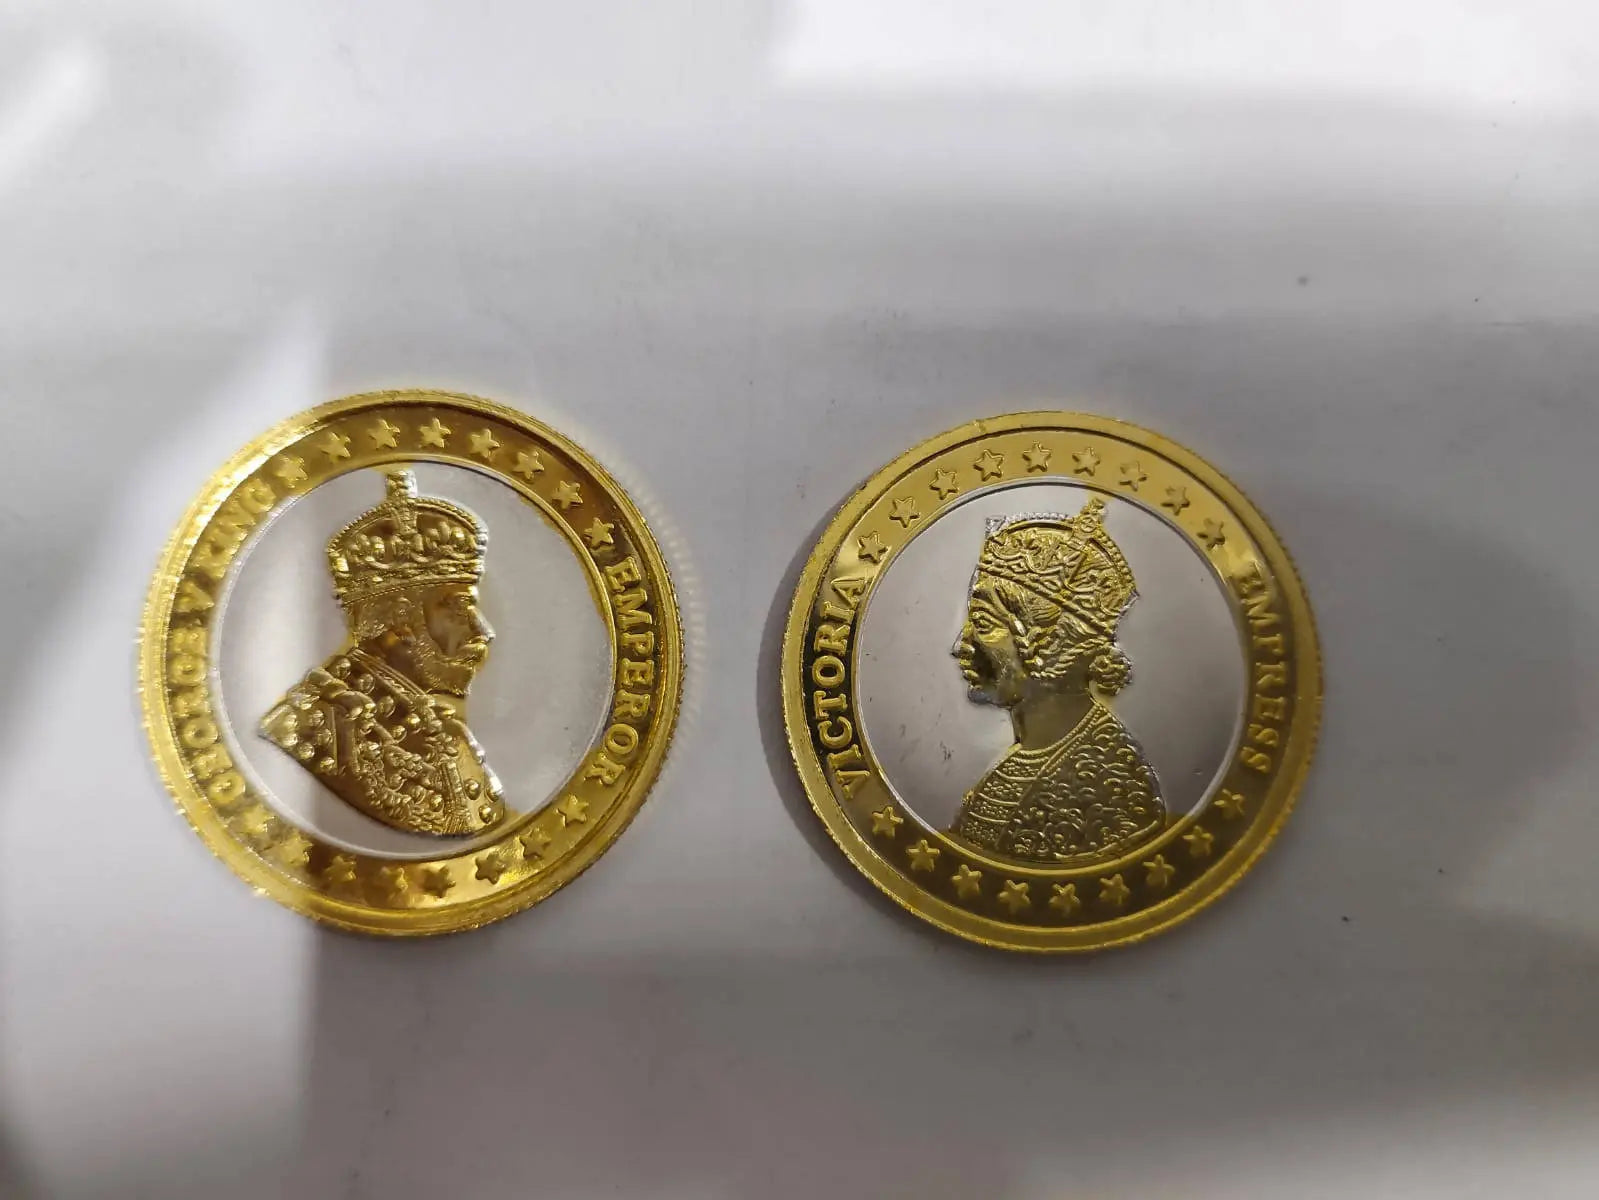 Golden Polish Silver Coin Sarafa Bazar India